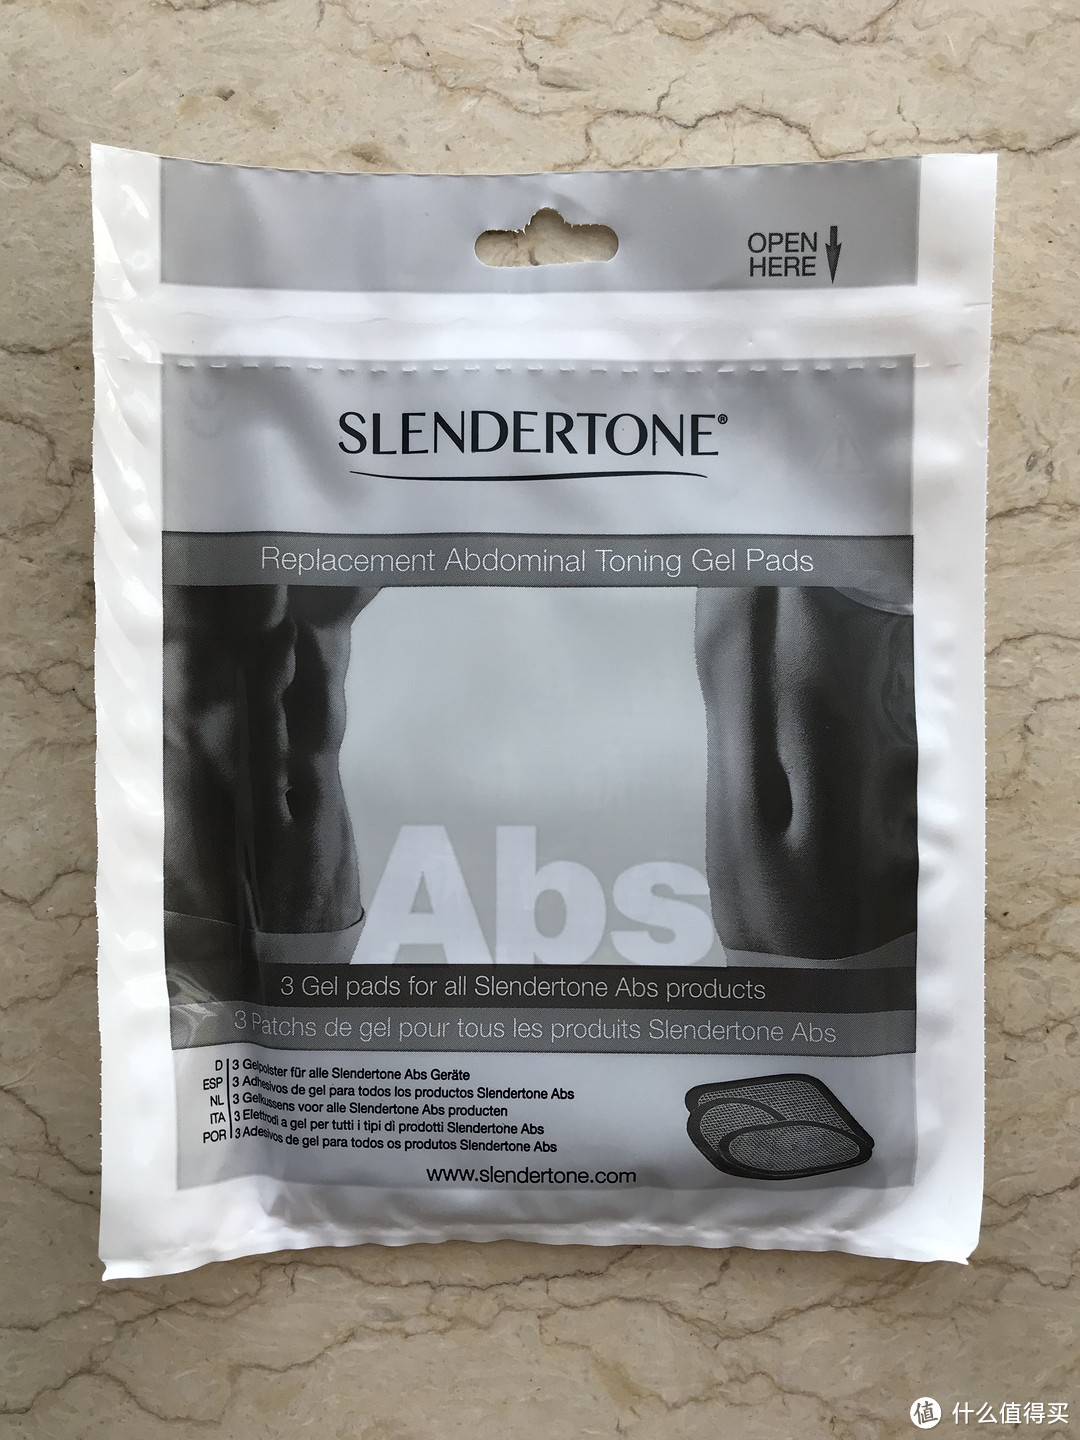 运动神器，懒人的福音——slendertone Abs7 Unisex腹部肌肉锻炼腰带使用体验